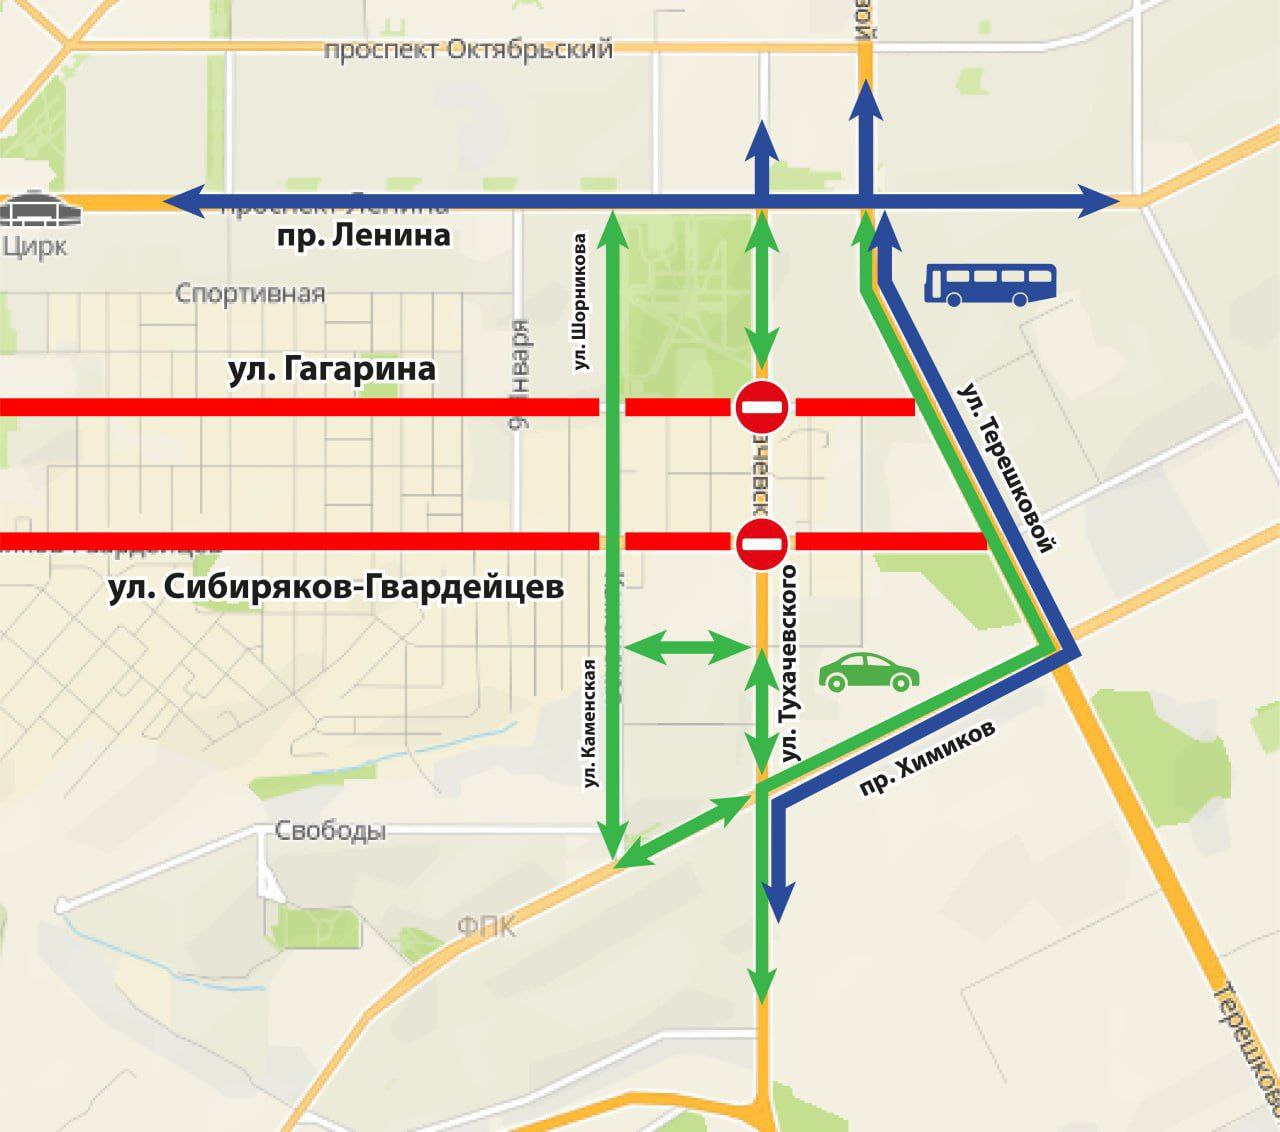 Участок улицы Тухачевского будет полностью закрыт для проезда